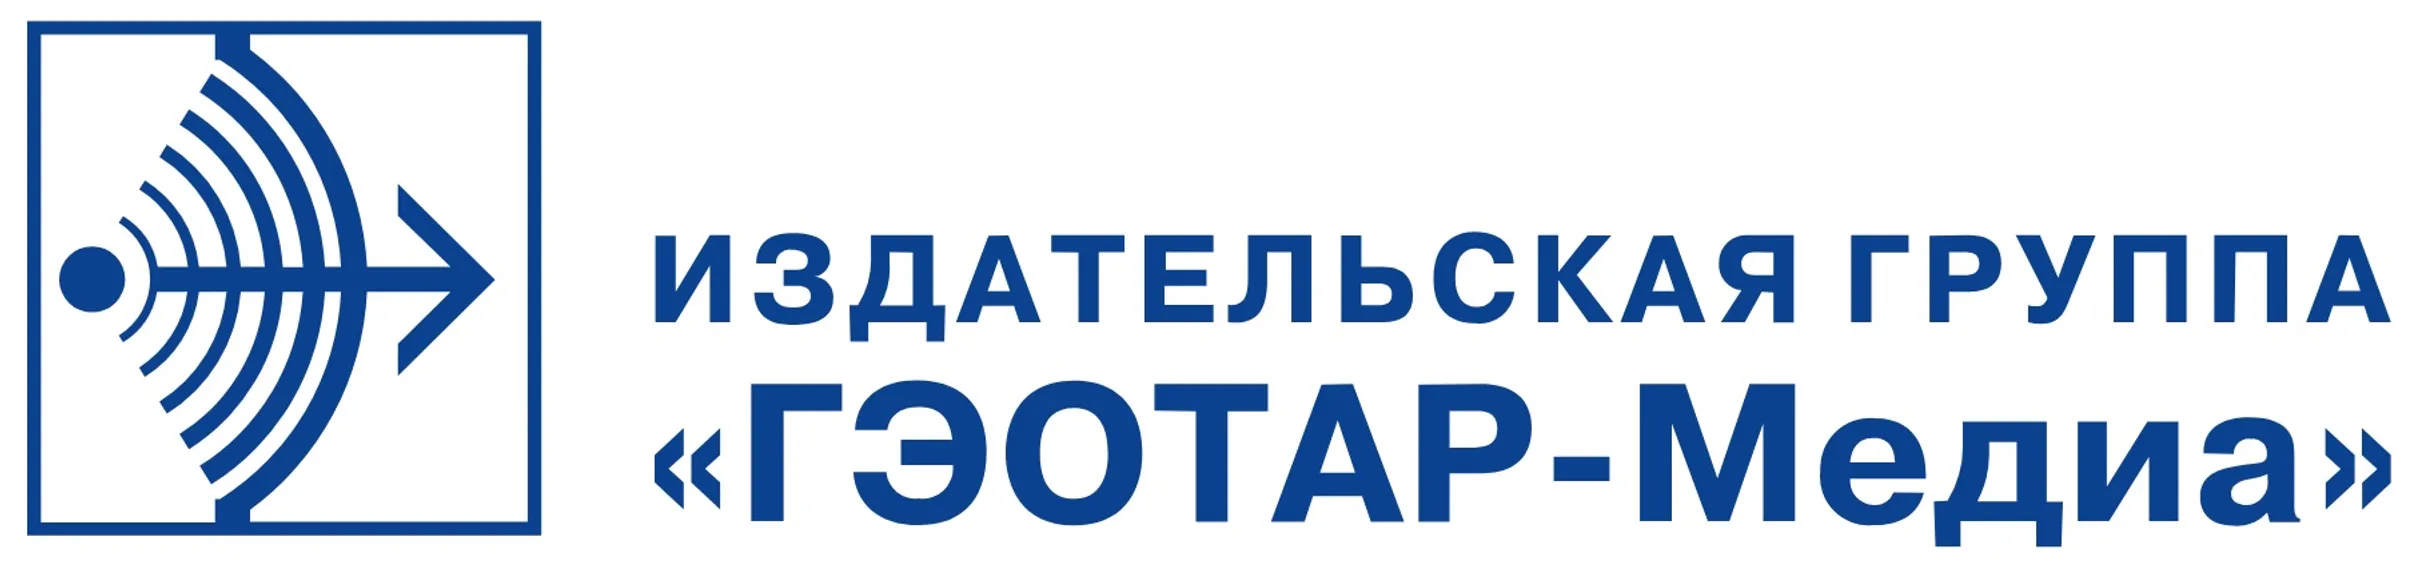 geotar.ru